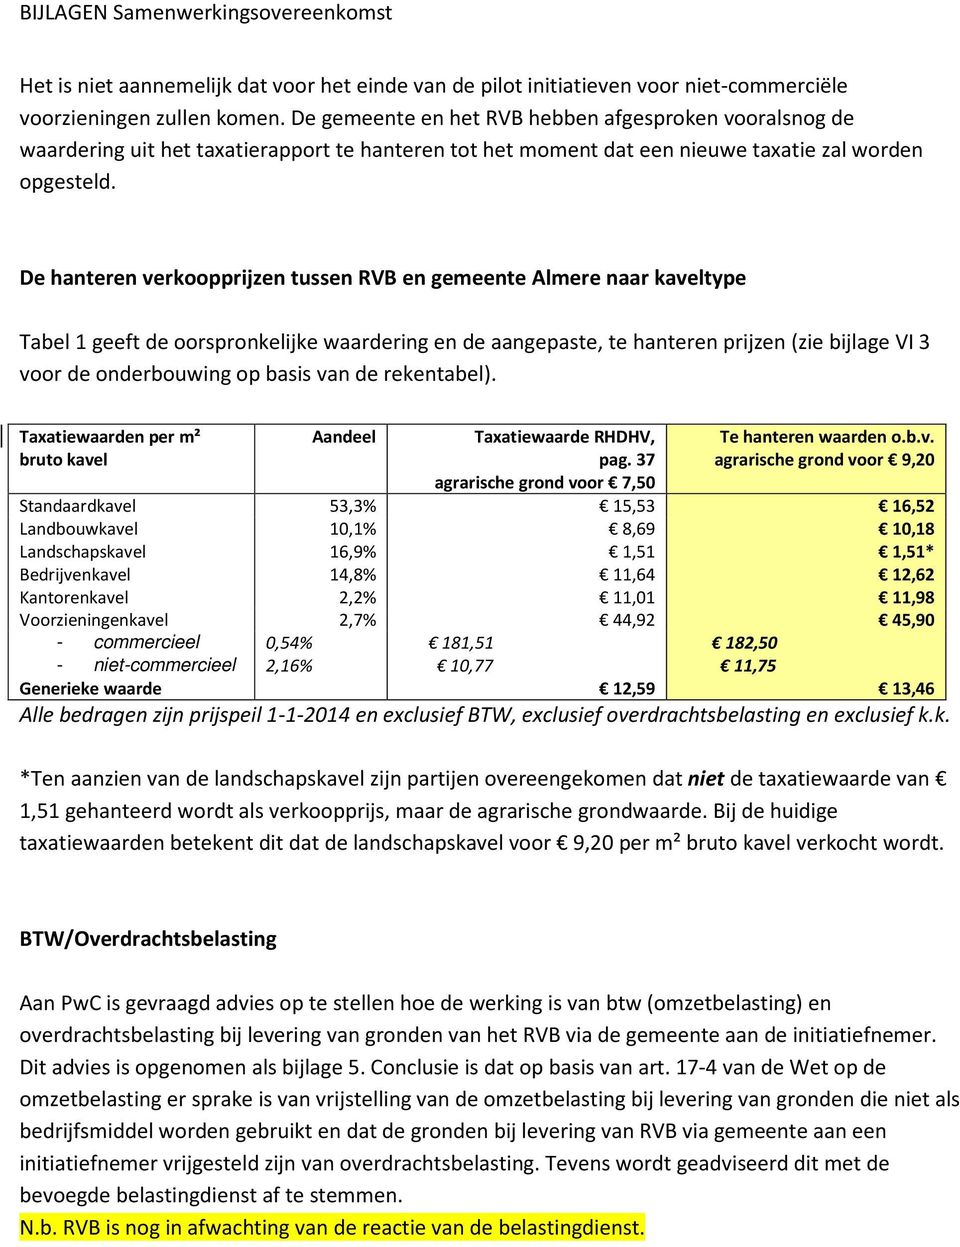 De hanteren verkoopprijzen tussen RVB en gemeente Almere naar kaveltype Tabel 1 geeft de oorspronkelijke waardering en de aangepaste, te hanteren prijzen (zie bijlage VI 3 voor de onderbouwing op